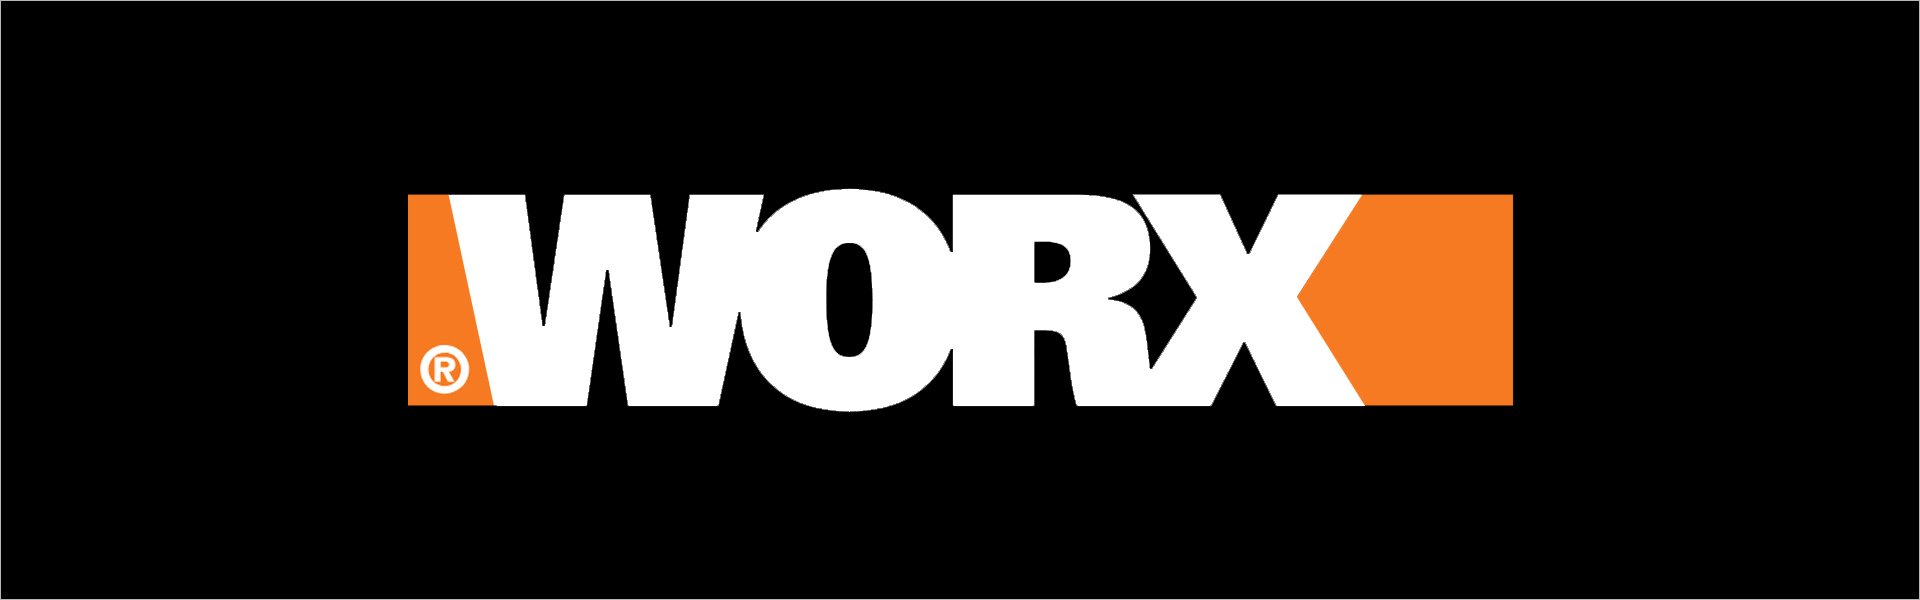 WORX WR147E.1 zāles pļāvējs - robots, melns, oranžs Worx